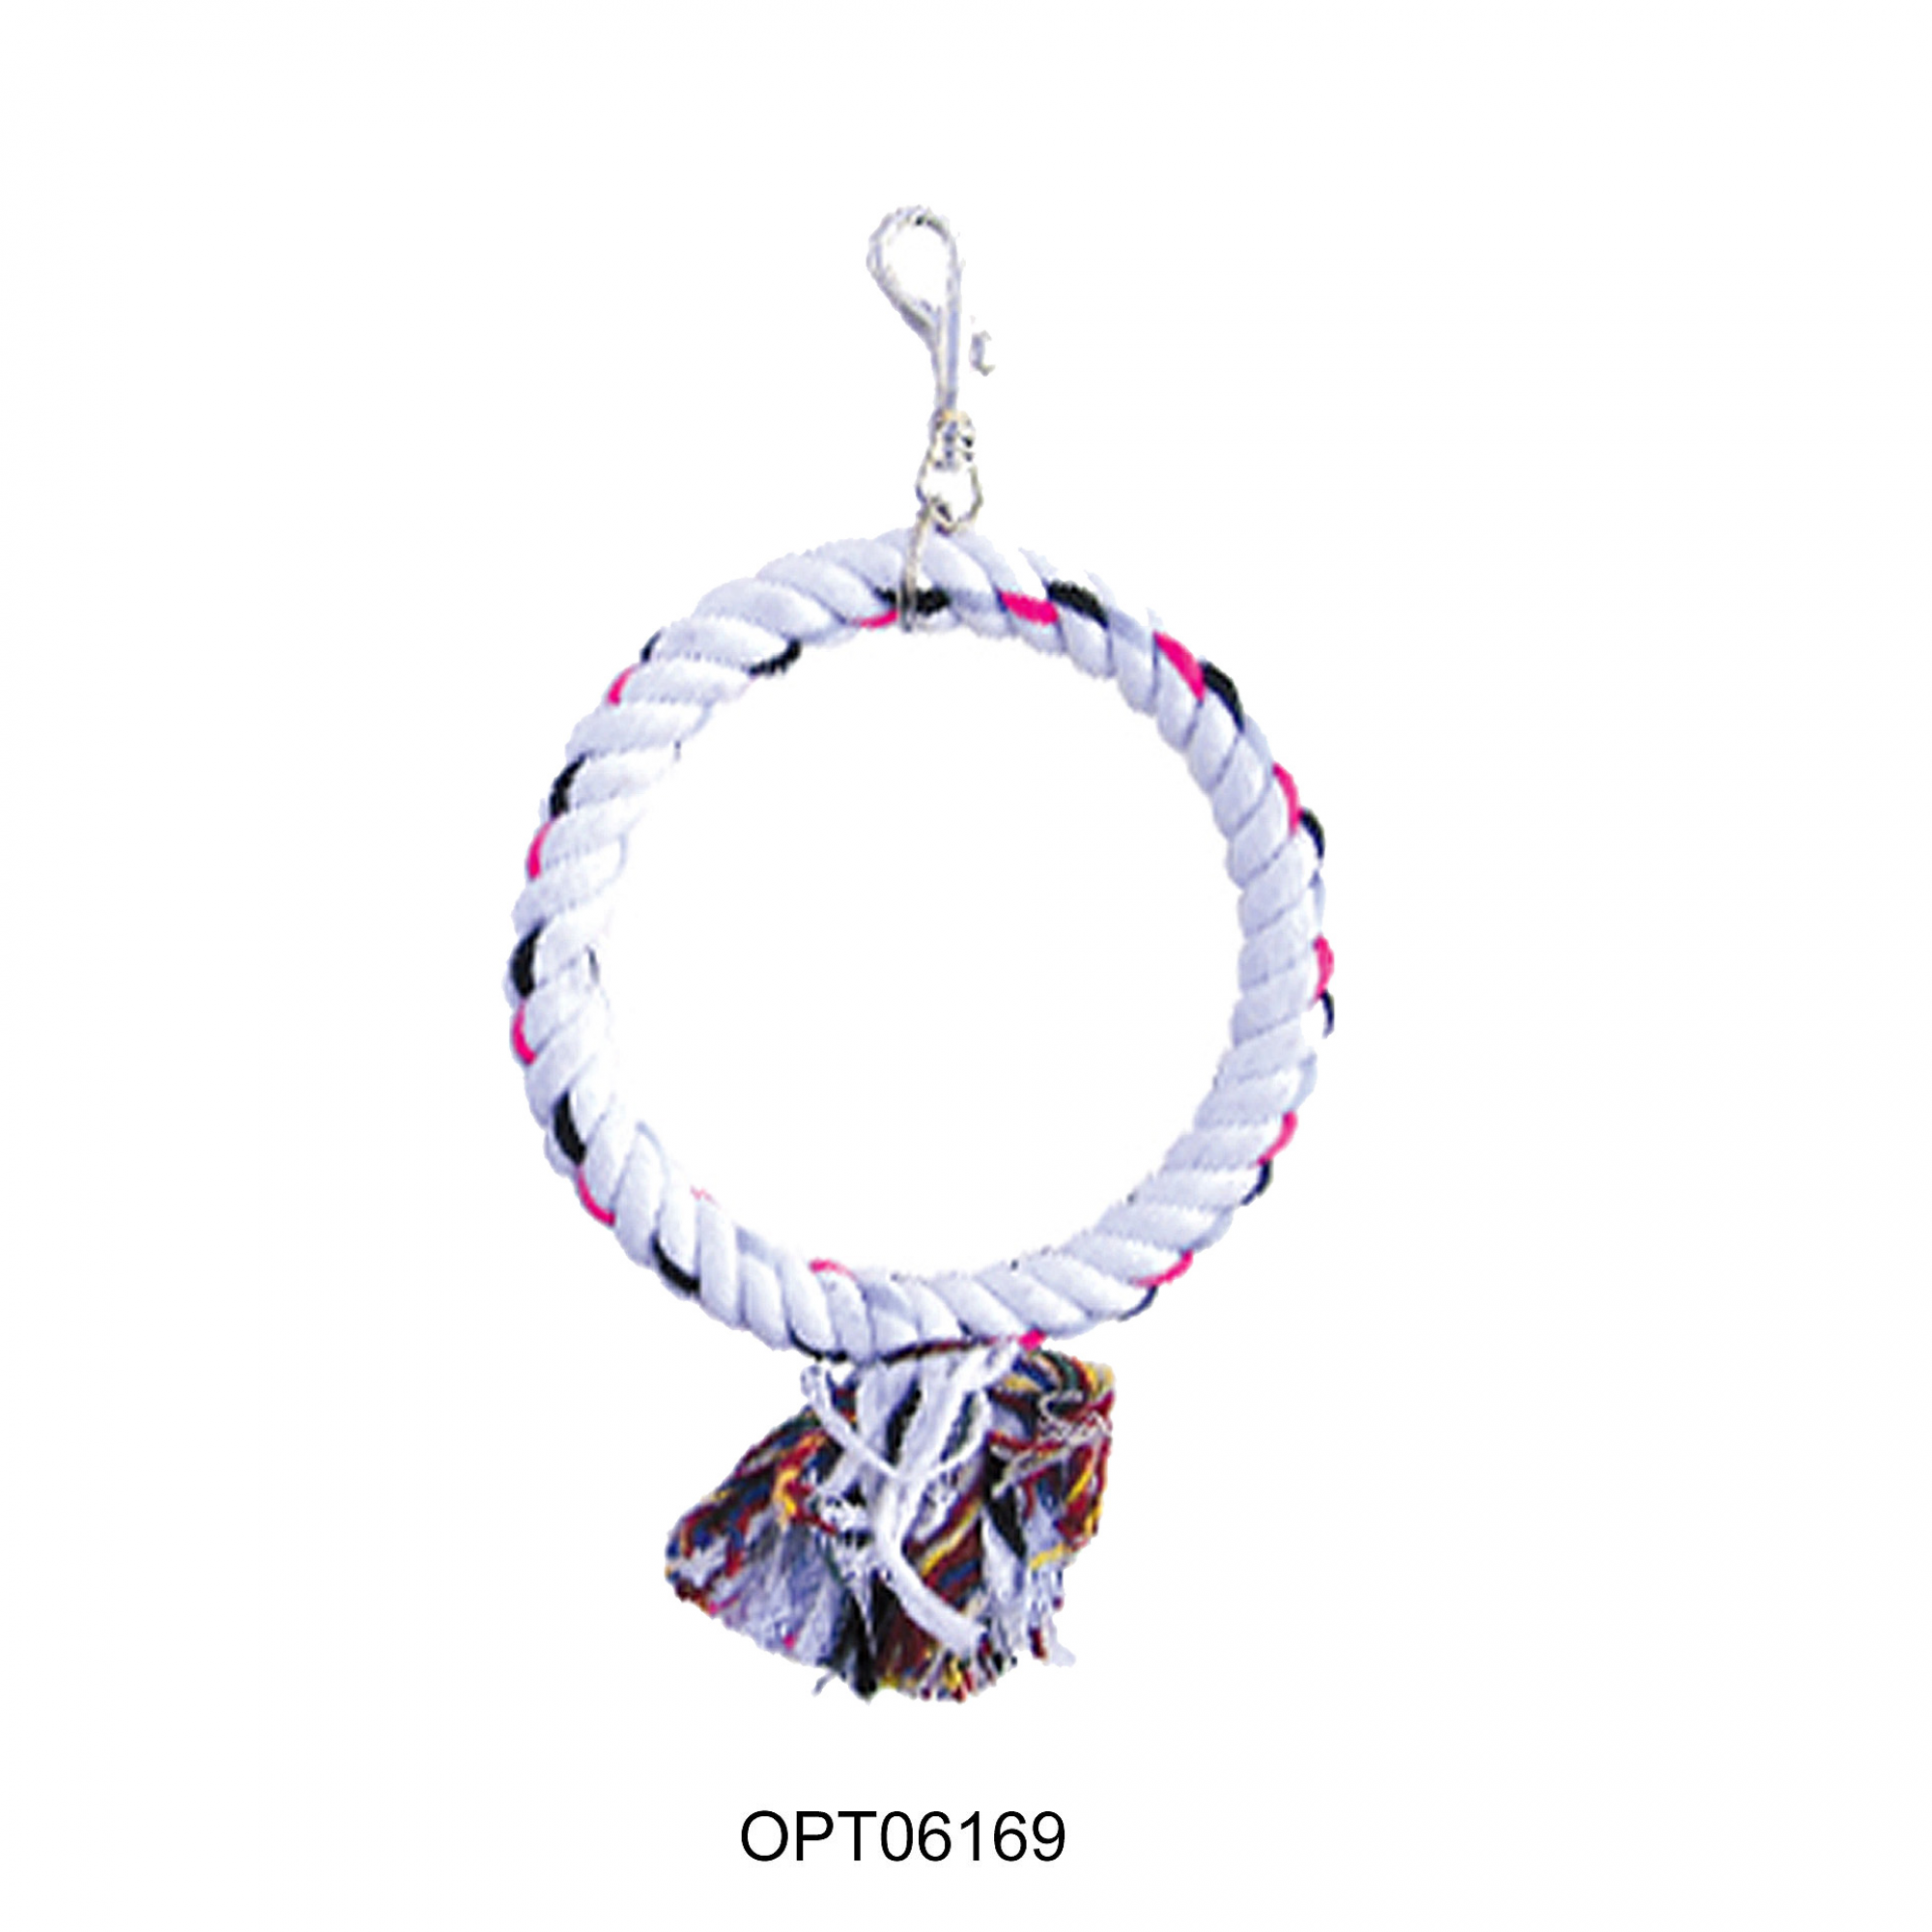 OPSP - 6169 - Round Rope Bird Toy 9"